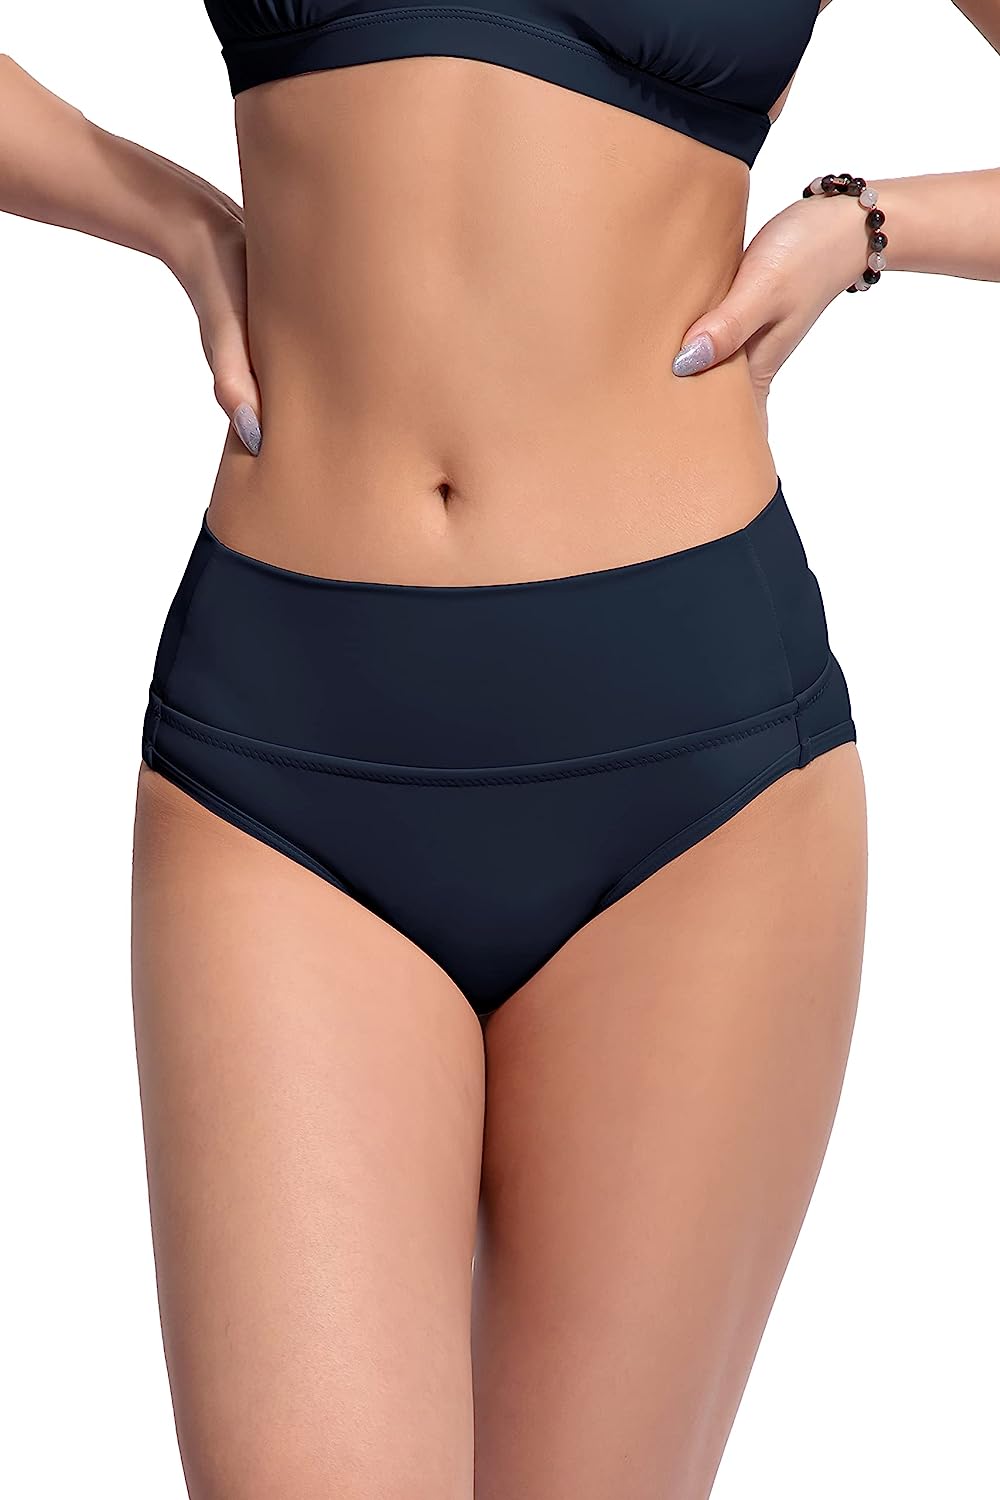 Girls Menstrual Swim Bottoms 4-Layer Leakproof Swimwear Waterproof